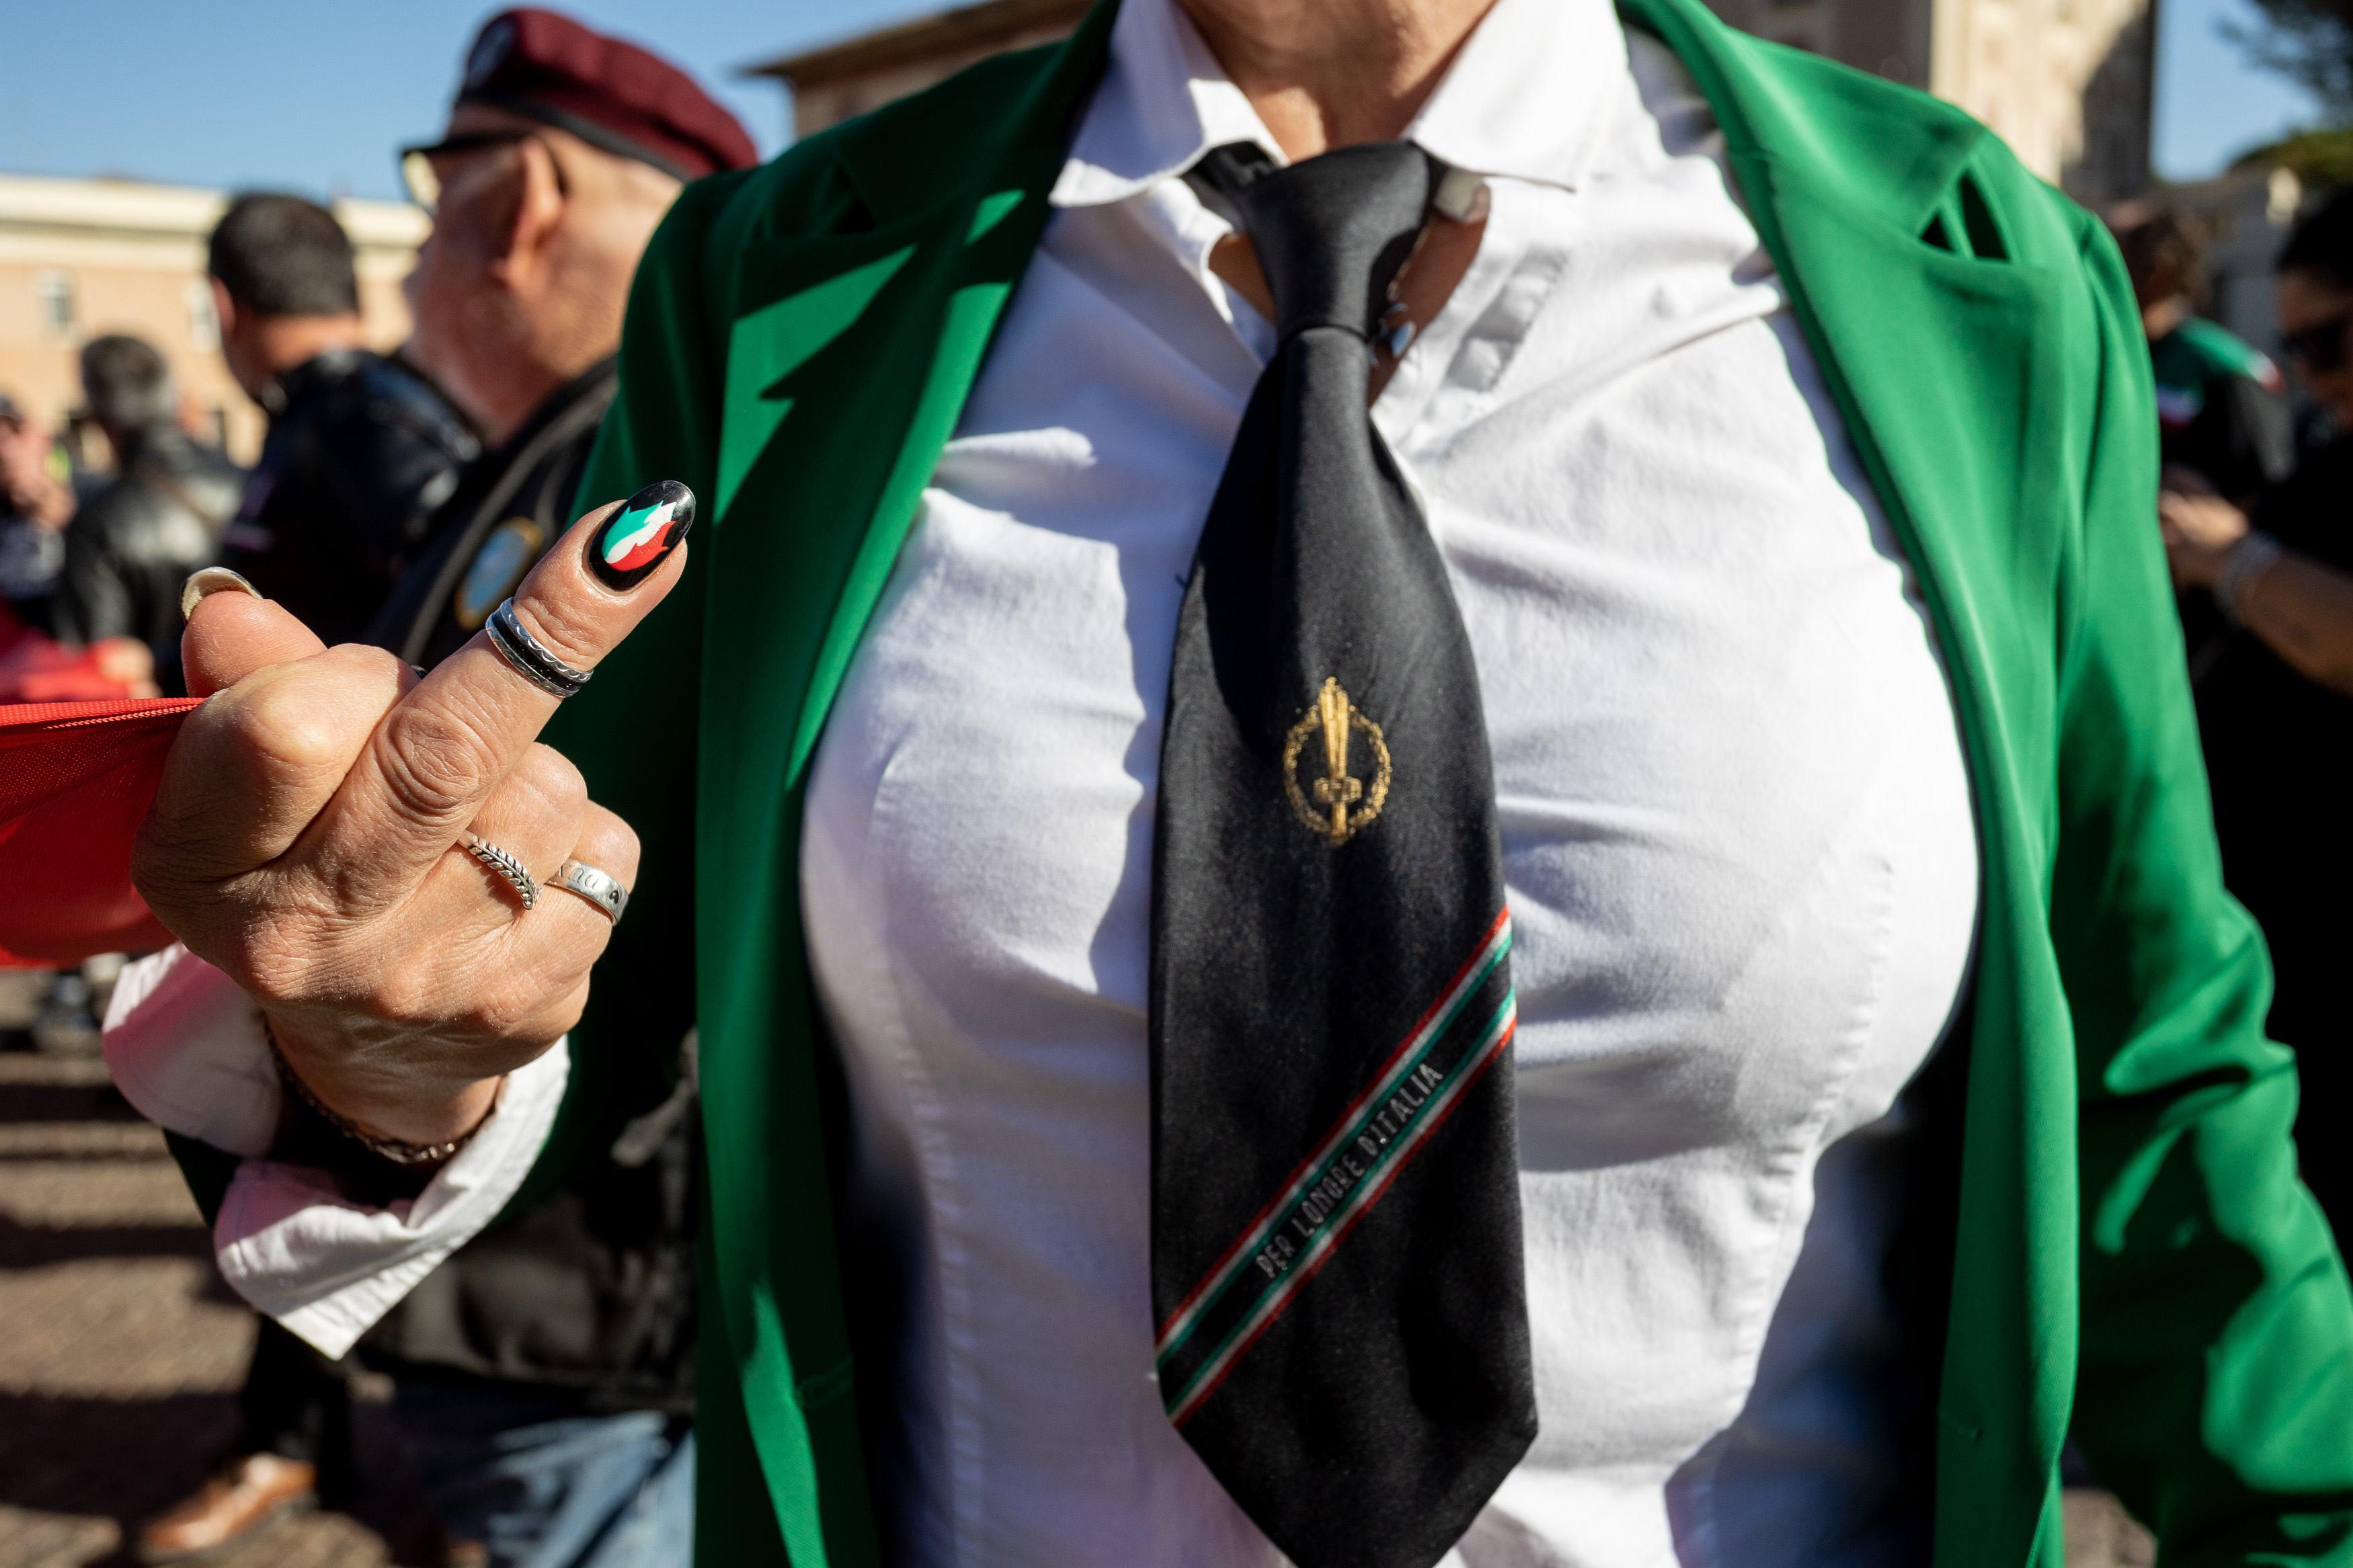 Perempuan mengenakan pakaian dengan warna bendera Italia. Dasi yang ia kenakan bertuliskan slogan fasis “Per L’Onore D’Italia” (“Demi Kehormatan Italia”).